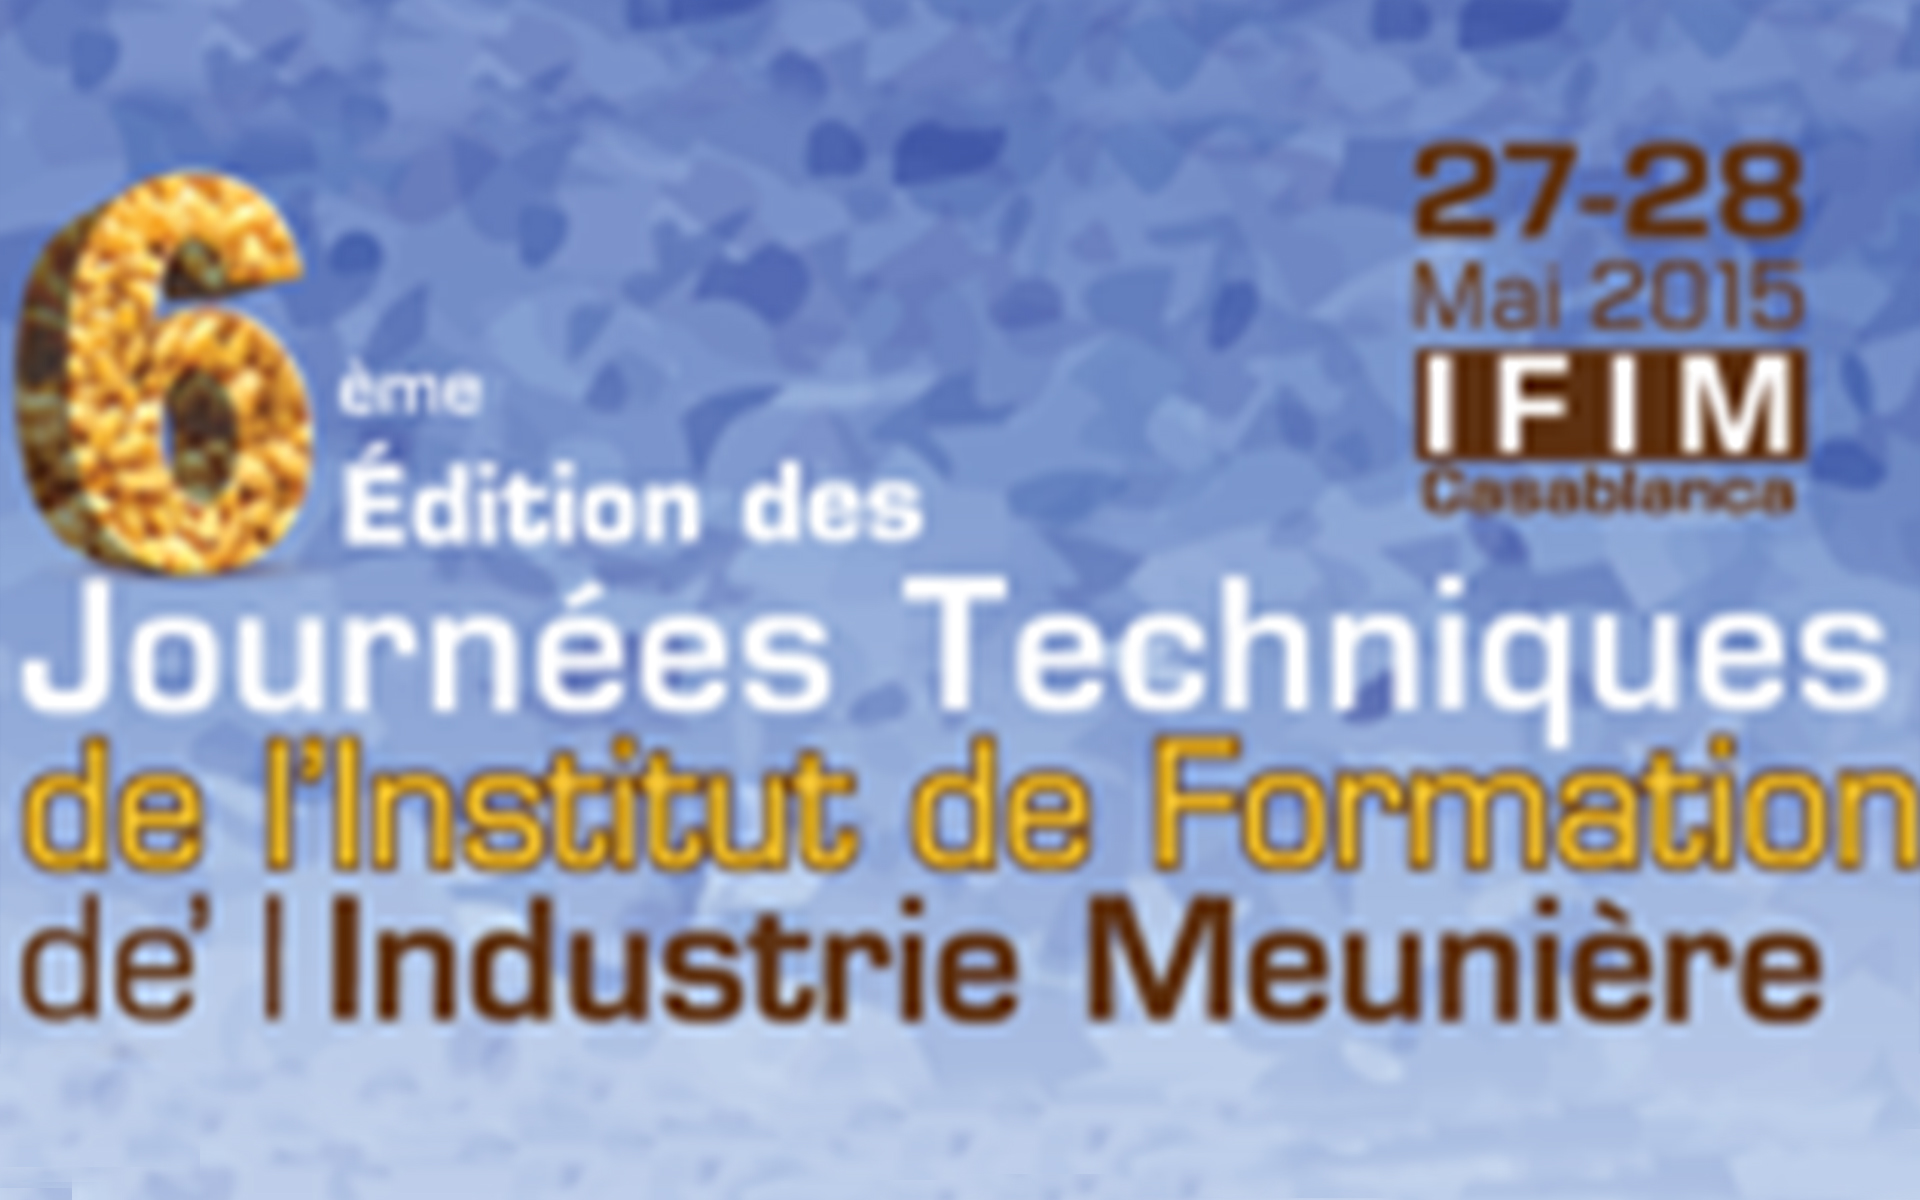 IFIM : Les journées techniques de l’Industrie Meunière